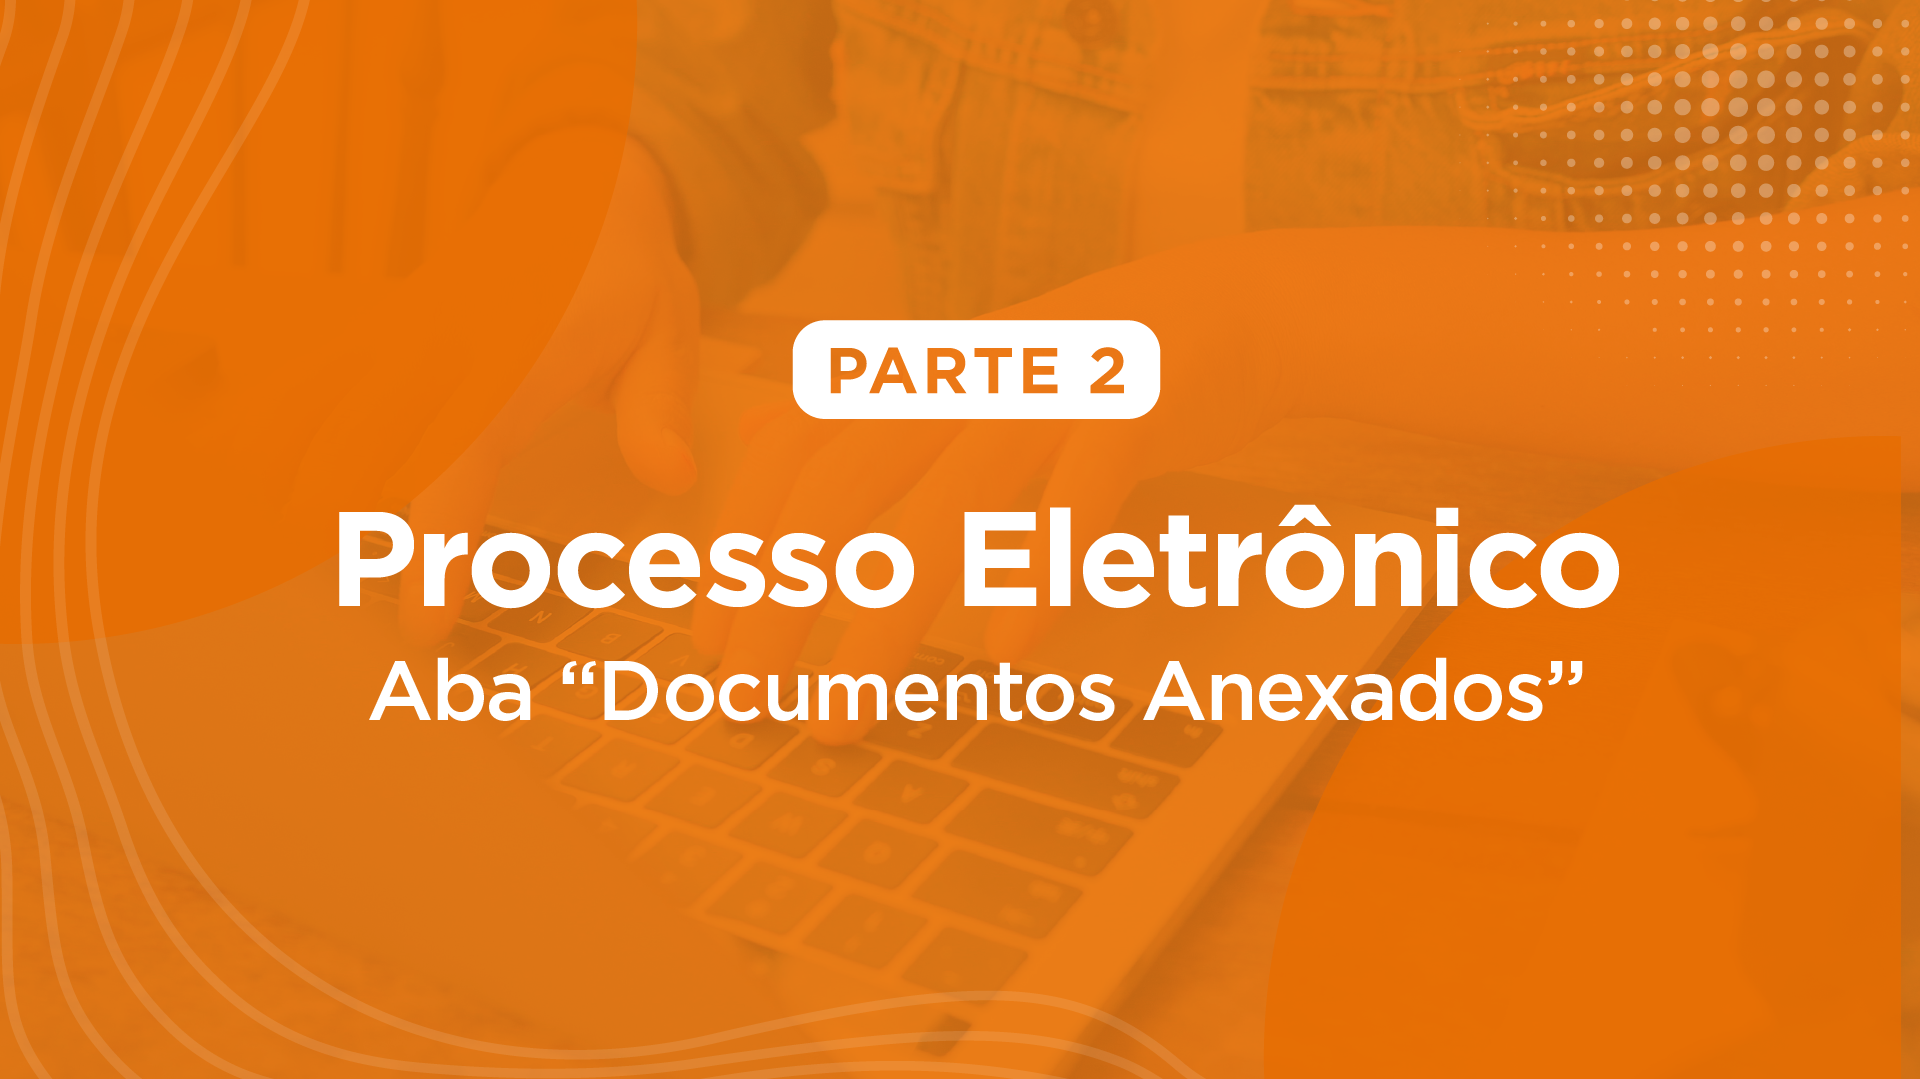 Processo Eletrônico - Aba "Documentos Anexados" 